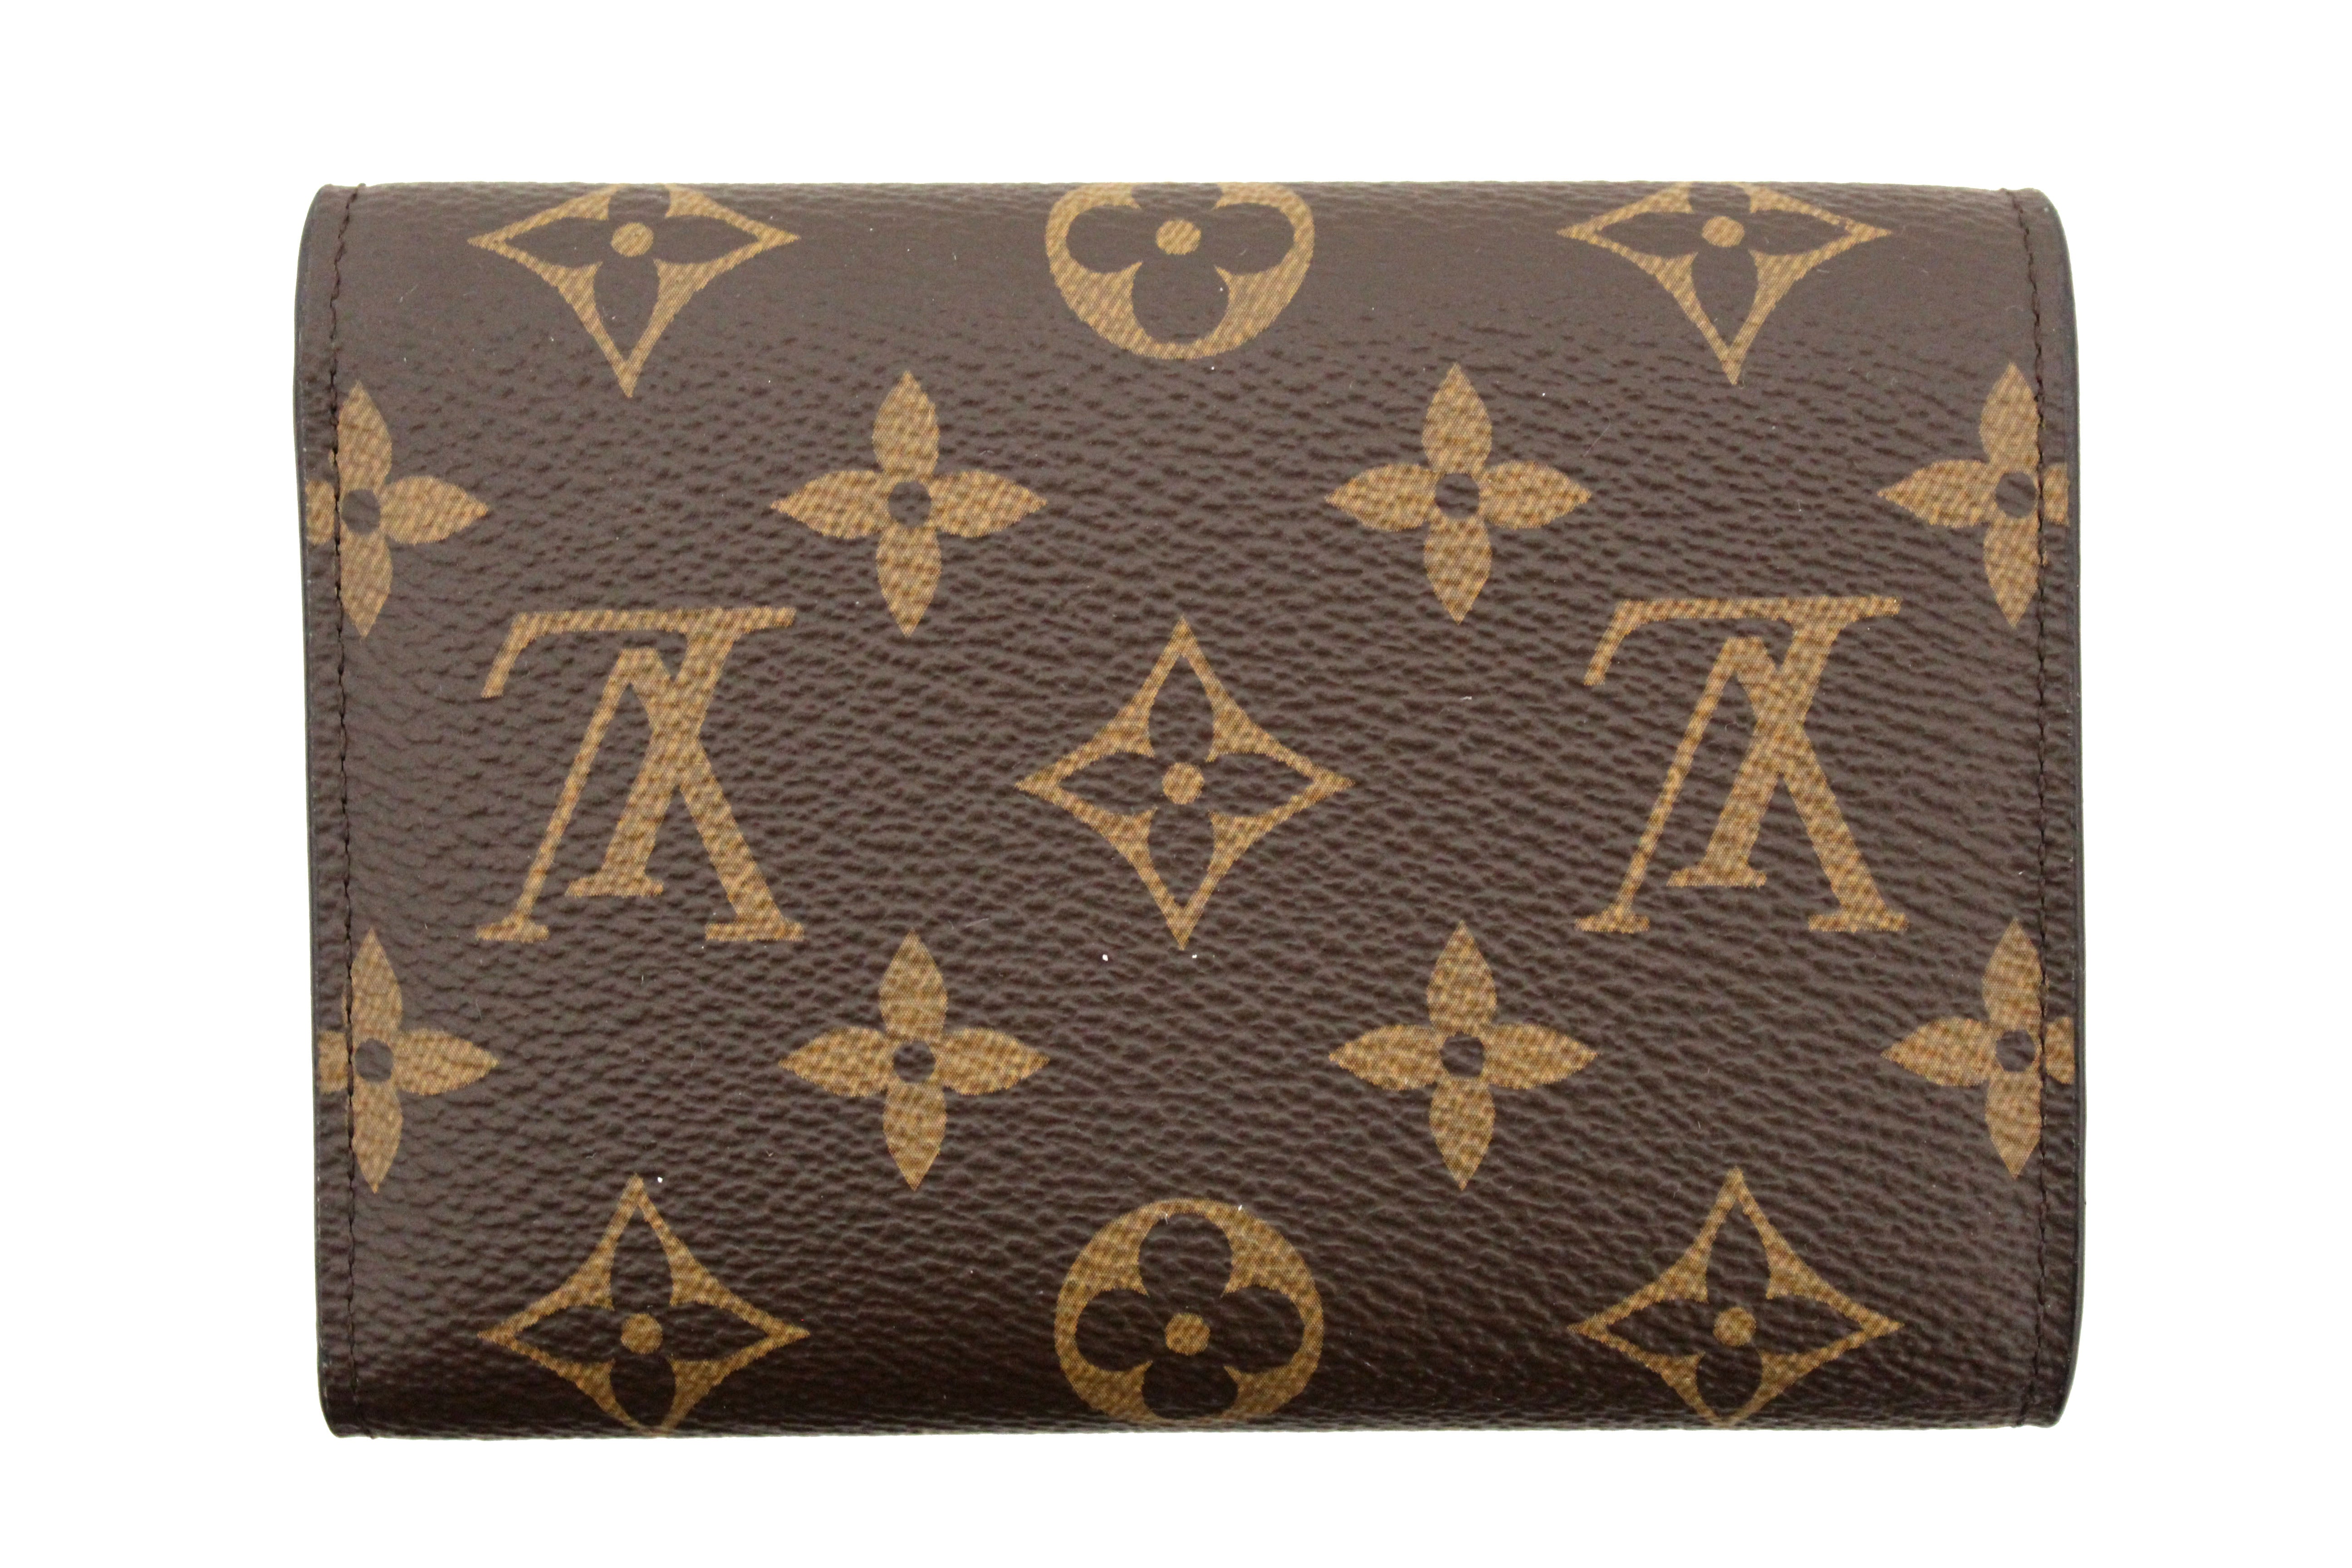 Authentic Louis Vuitton Monogram Canvas Flower Compact Wallet